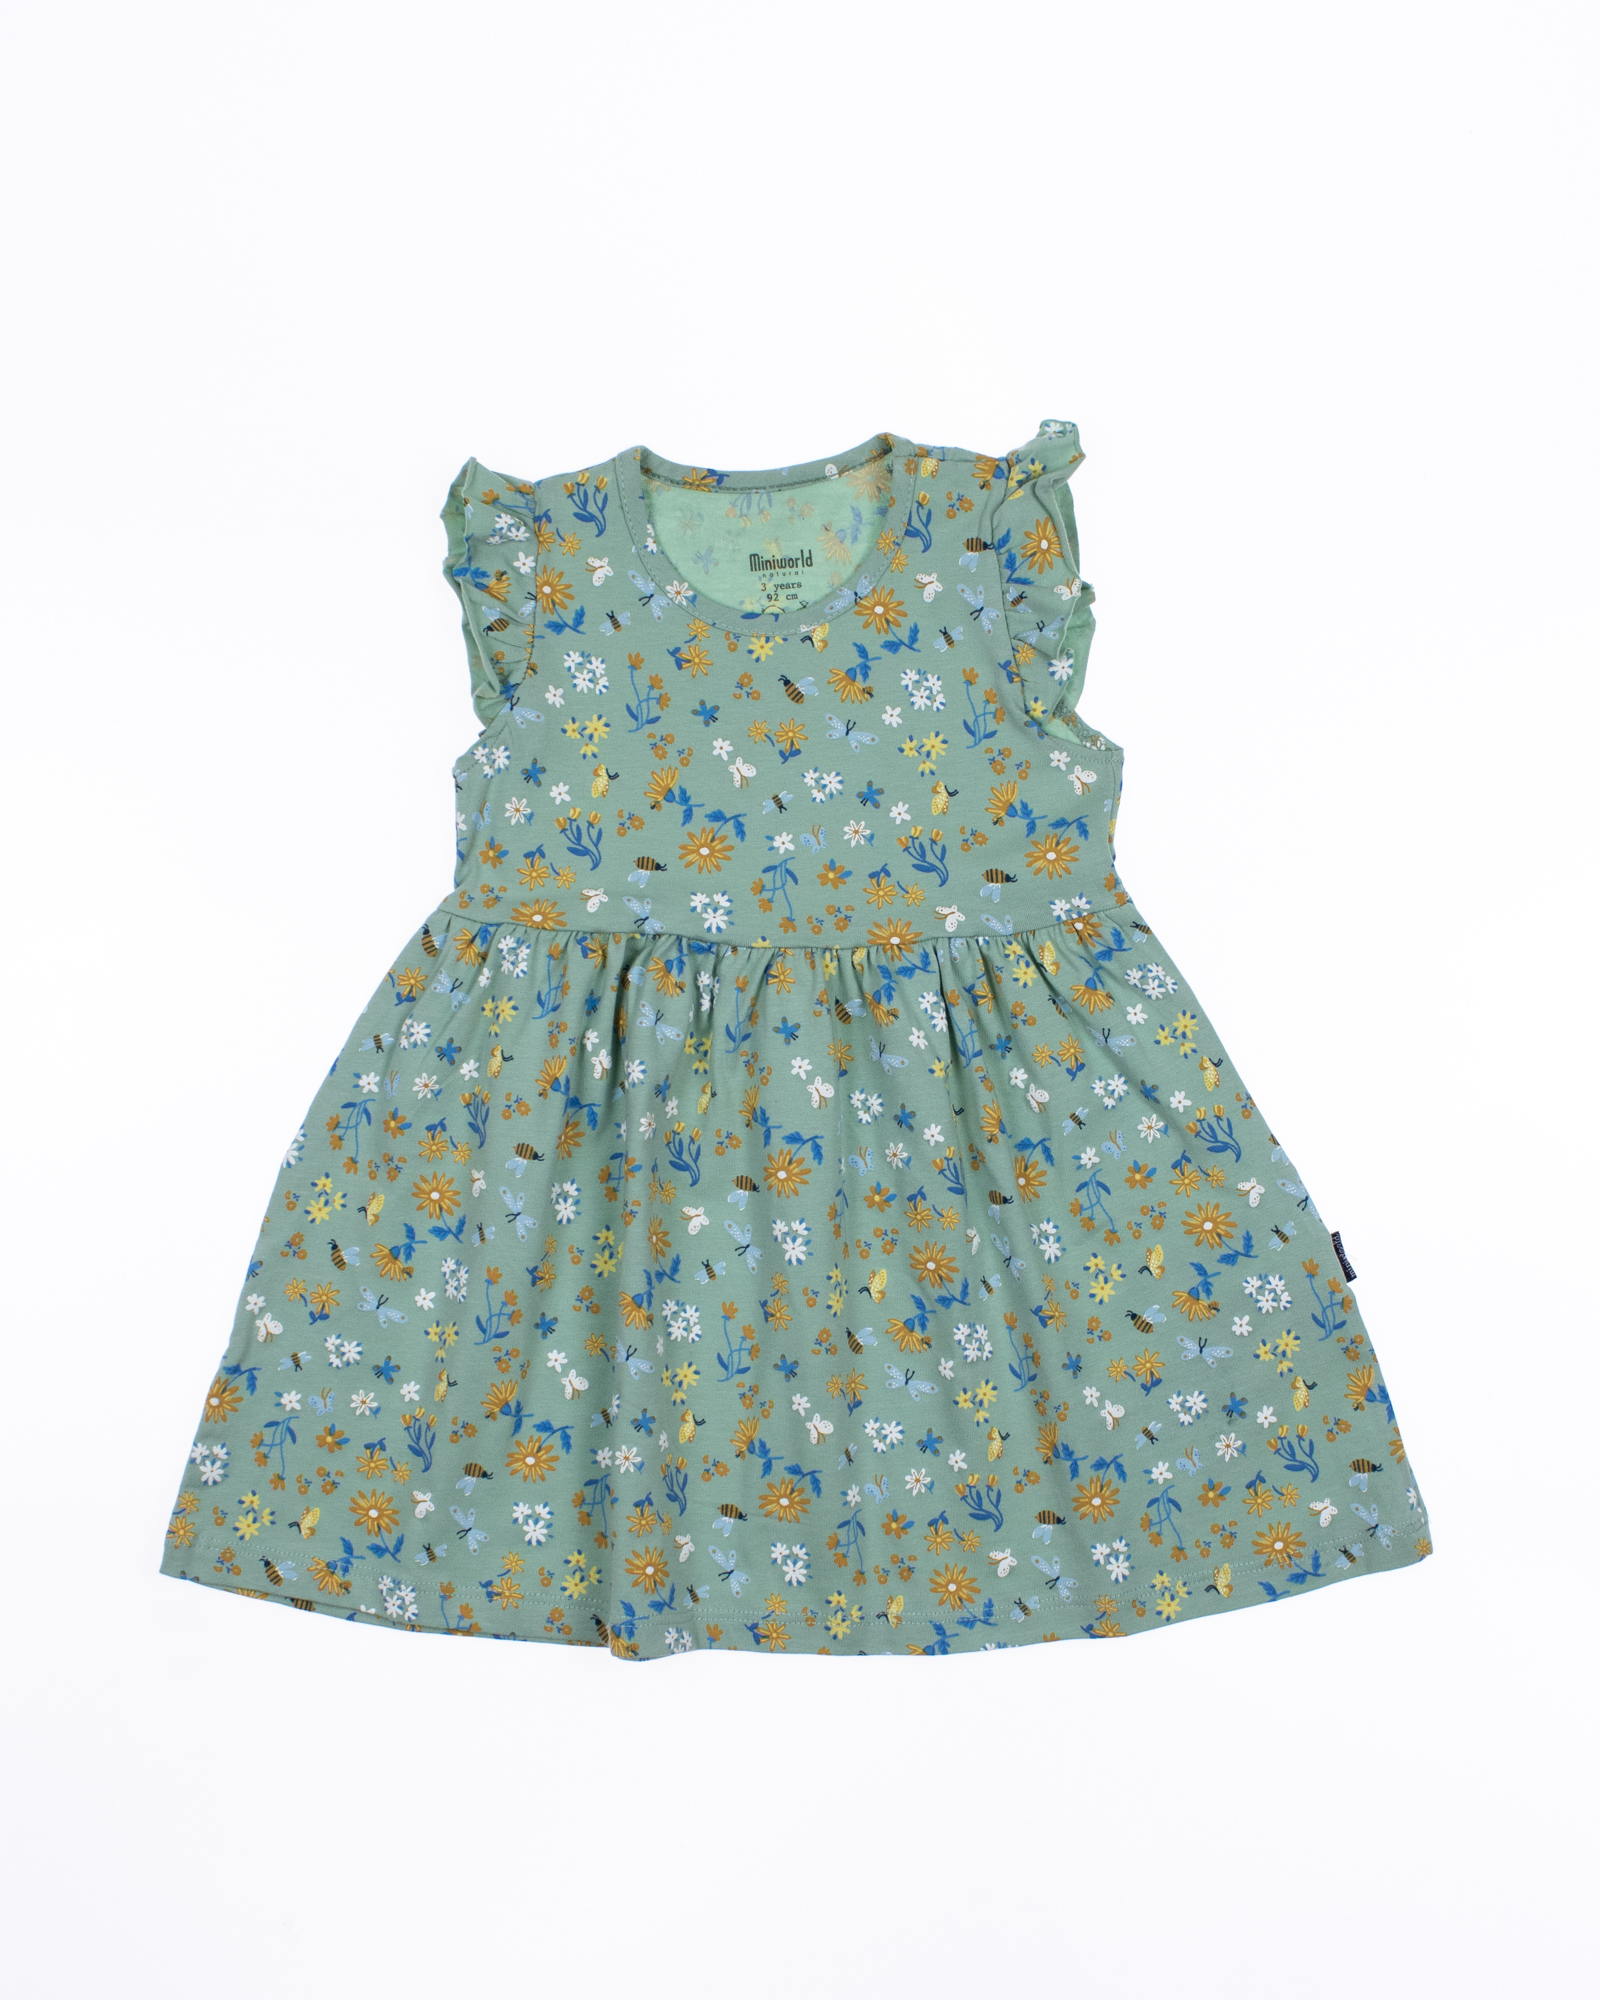 RLD 17119 Платье  (цвет: Оливковый)